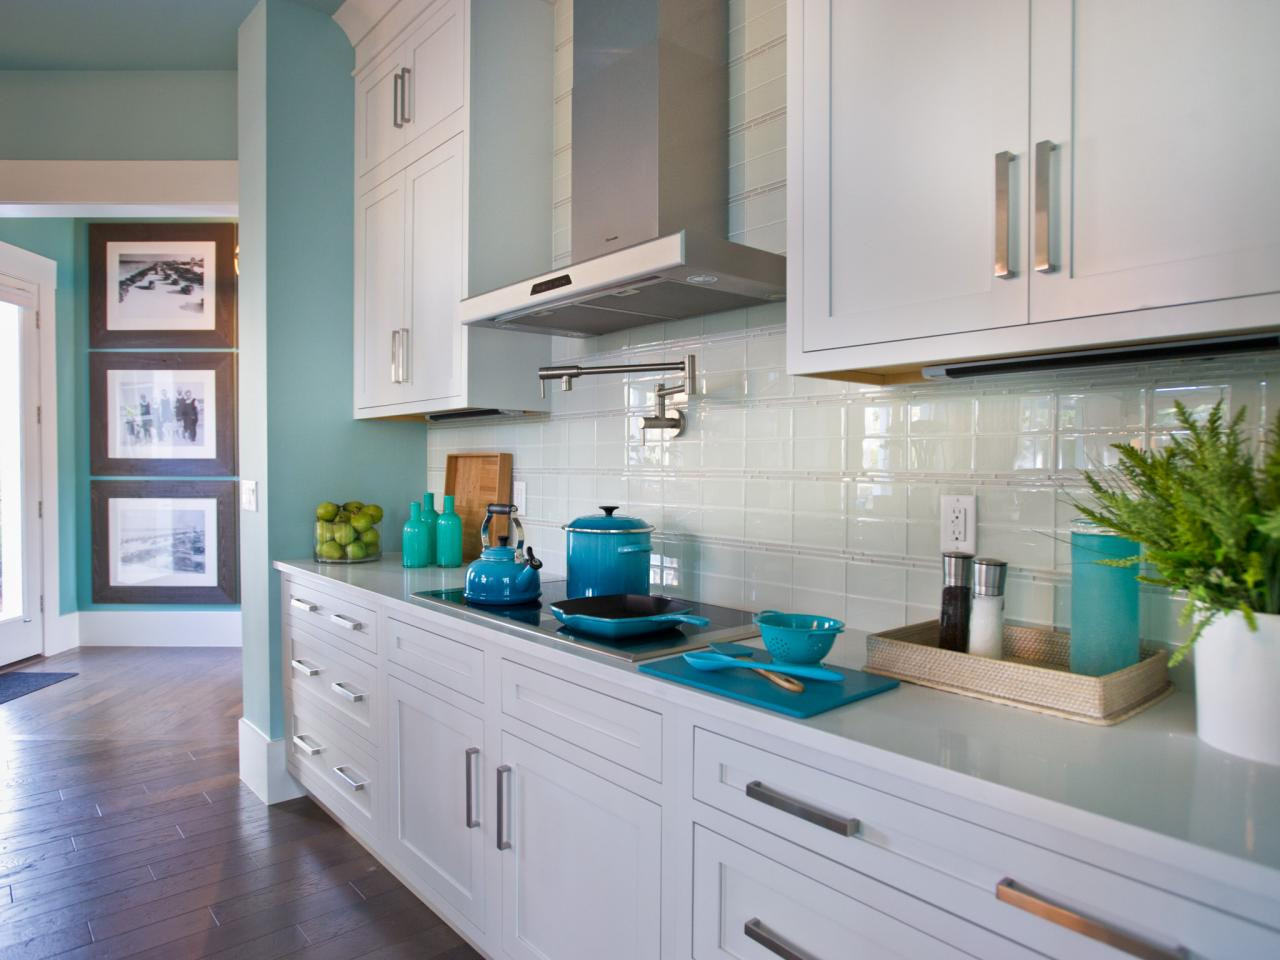 White Kitchen Tile Backsplash
 White Kitchen Backsplash Ideas – HomesFeed